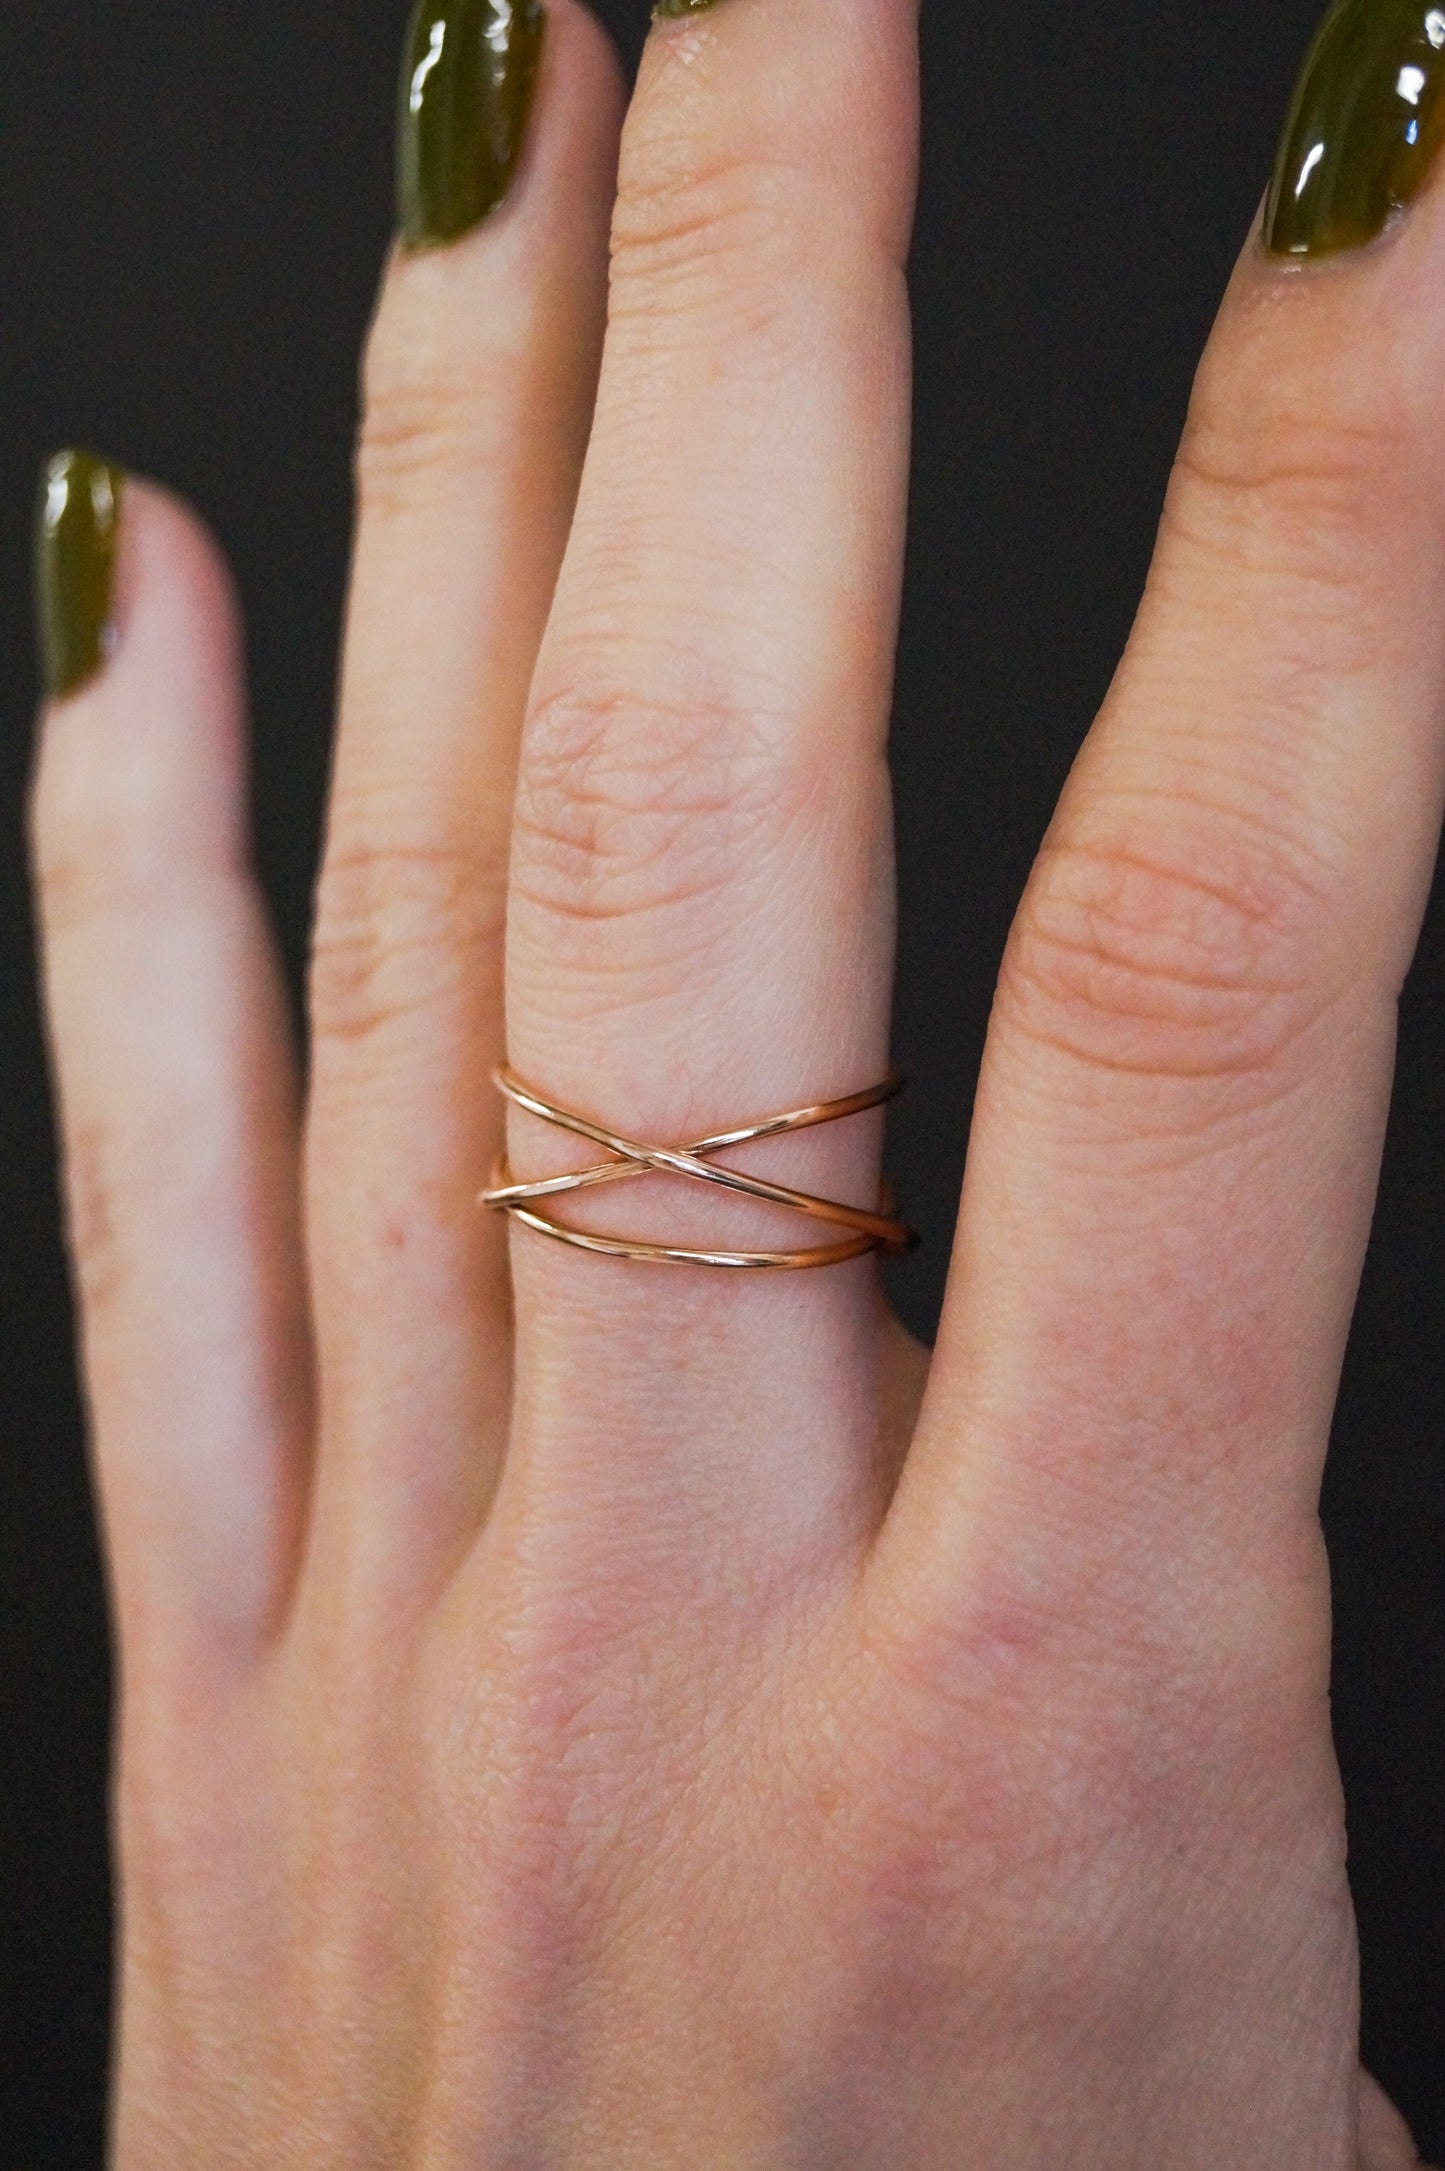 Wraparound Ring, Solid 14K Rose Gold